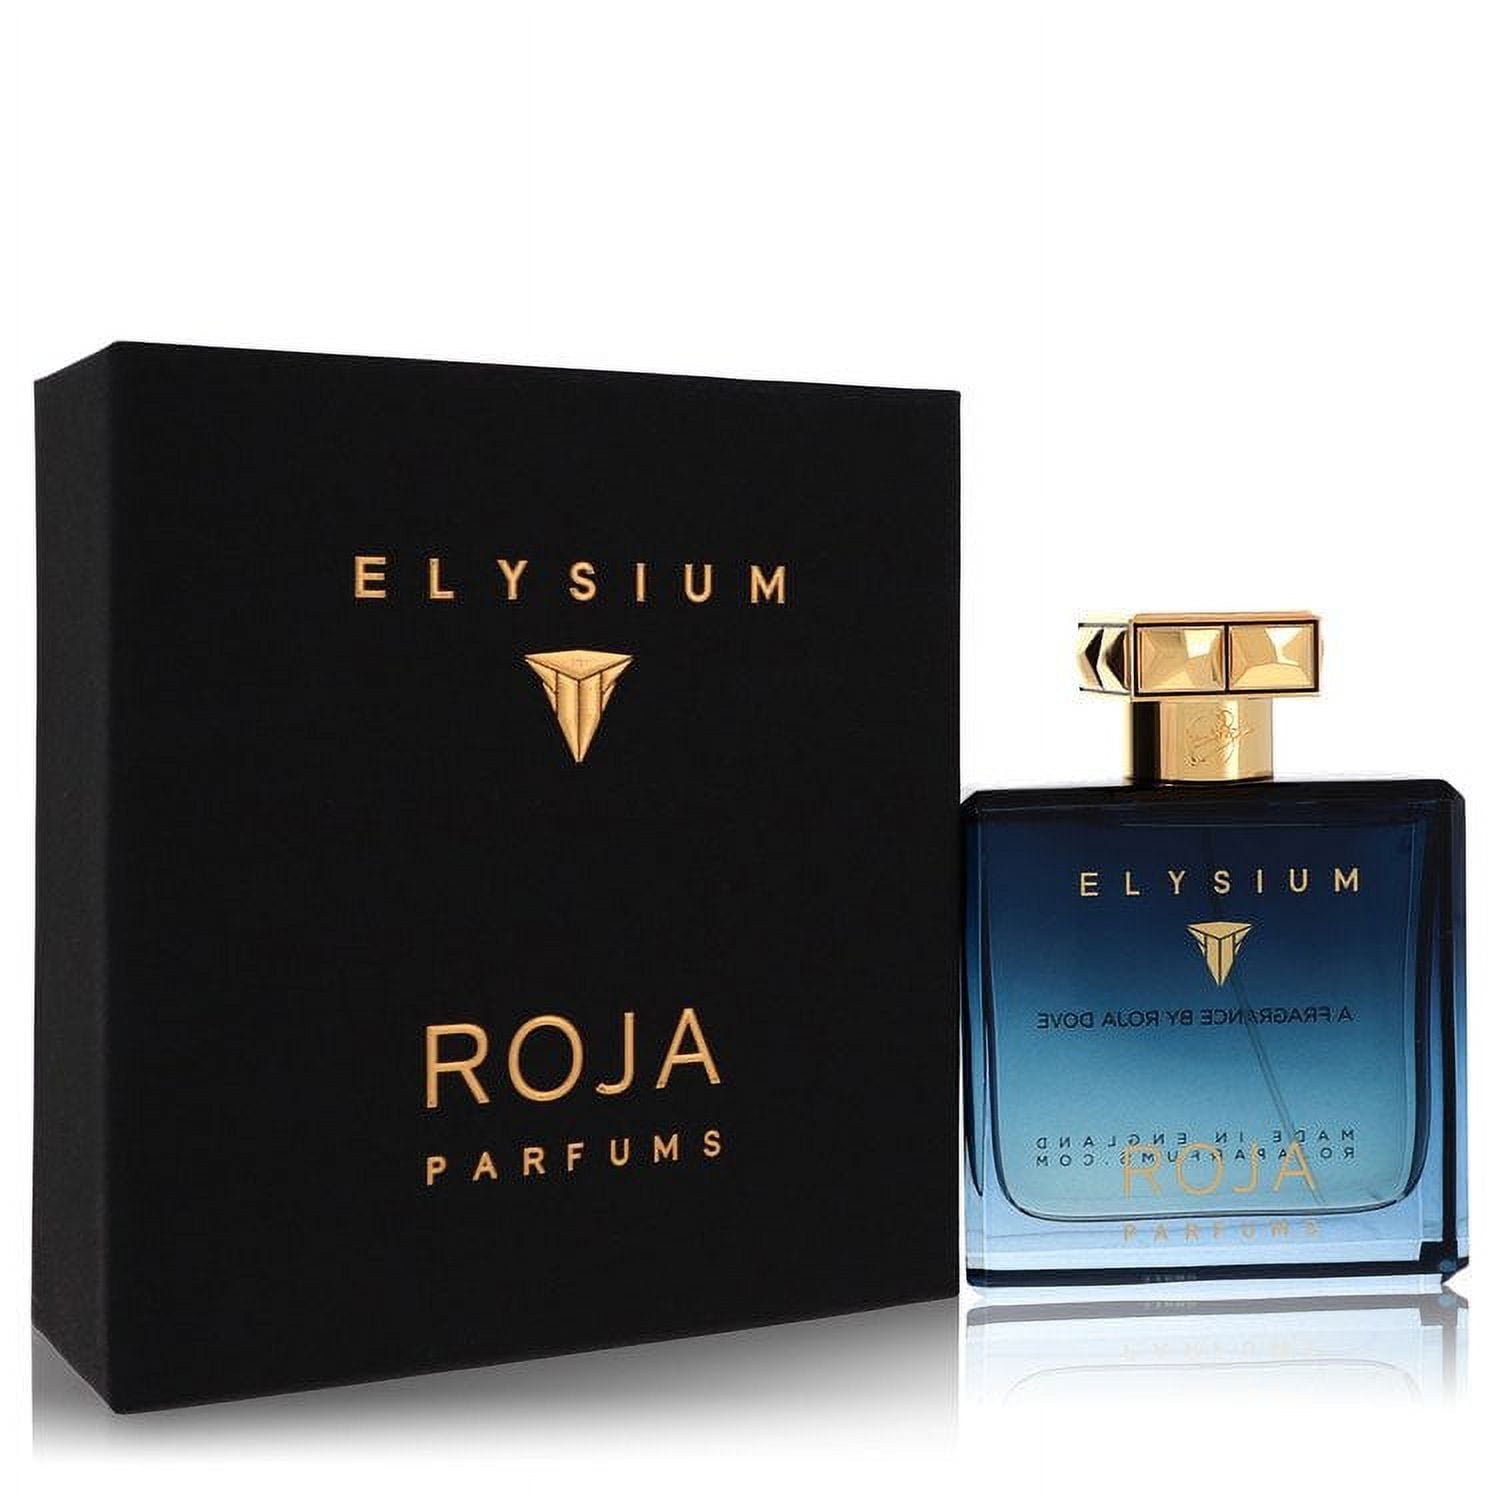 Roja Parfums Elysium Pour Homme Parfum by Roja Parfums 1.7oz. / 50 ml  5060399671316 - Fragrances & Beauty, Elysium Parfum Pour Homme - Jomashop